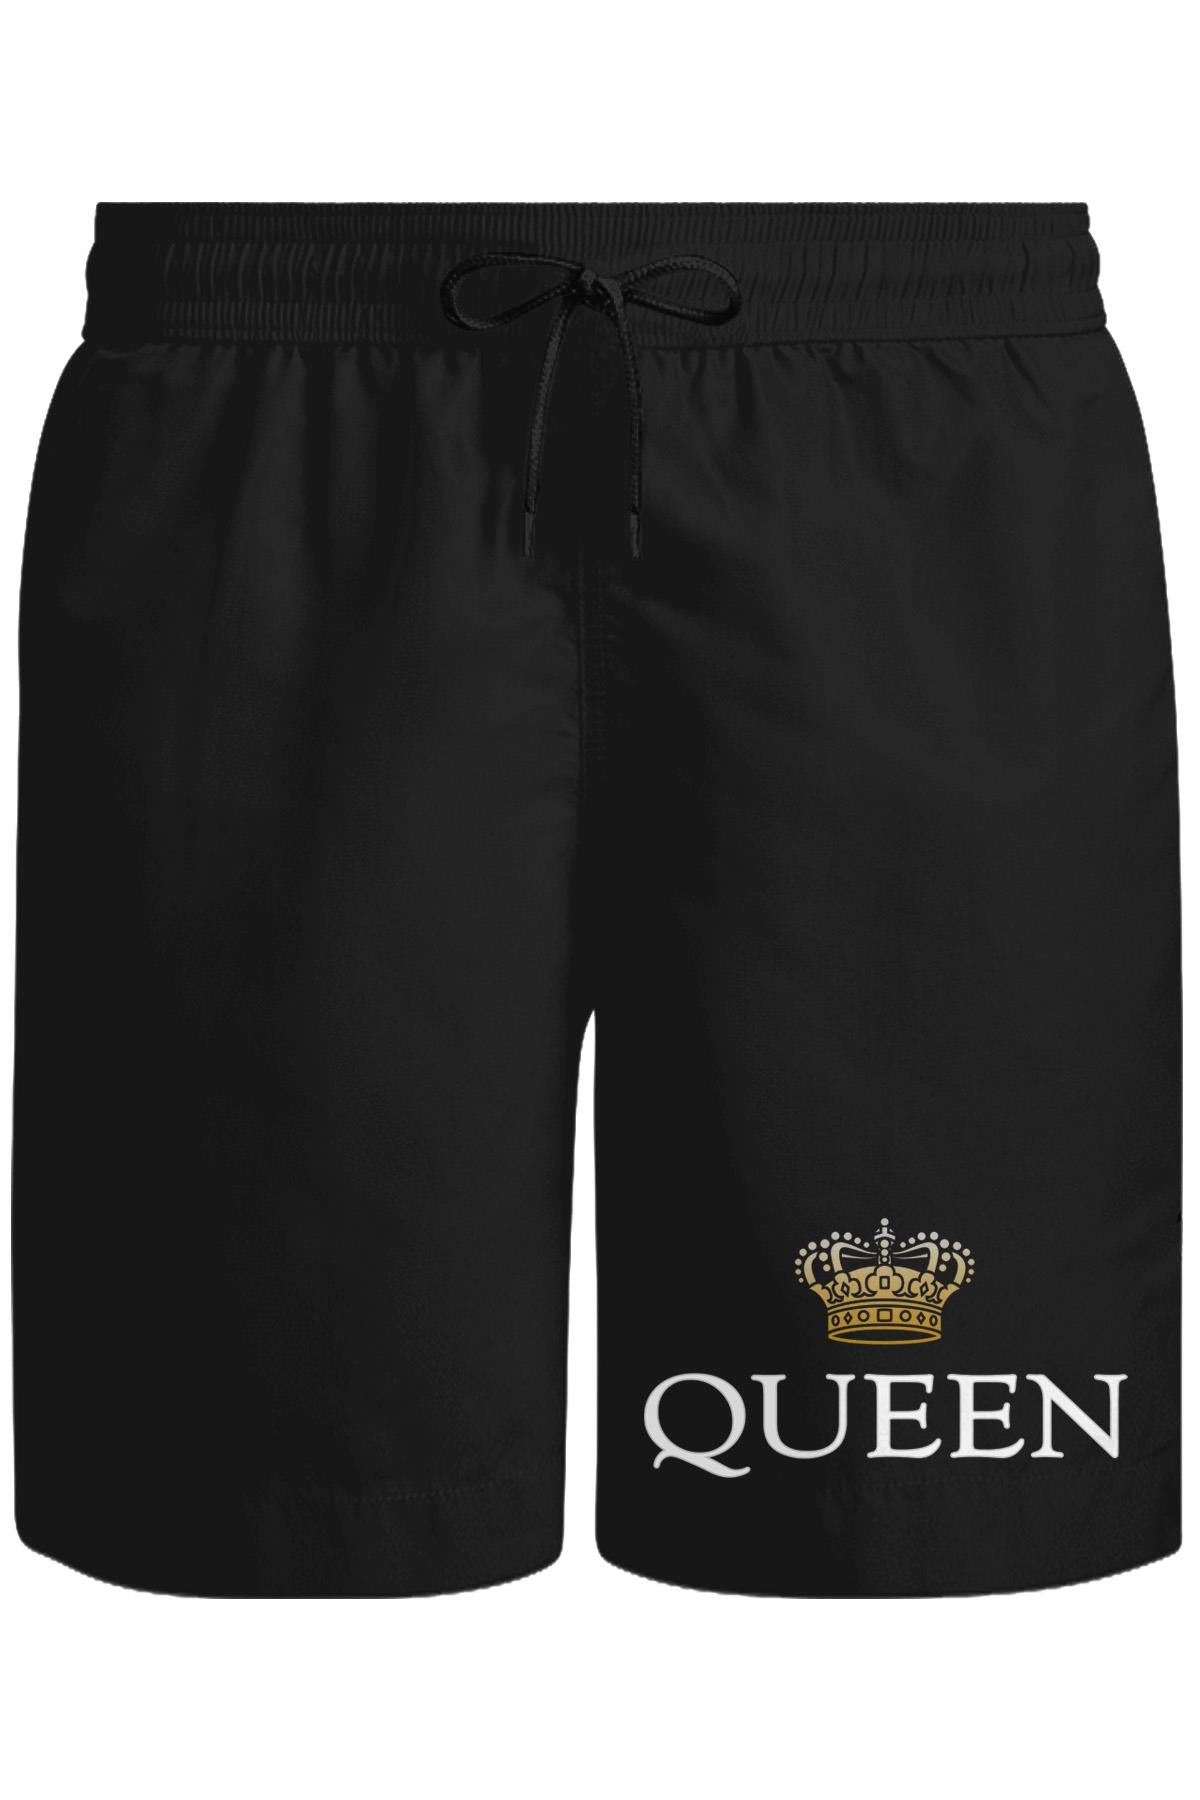 Kraliçe - Queen Unisex Siyah Şort